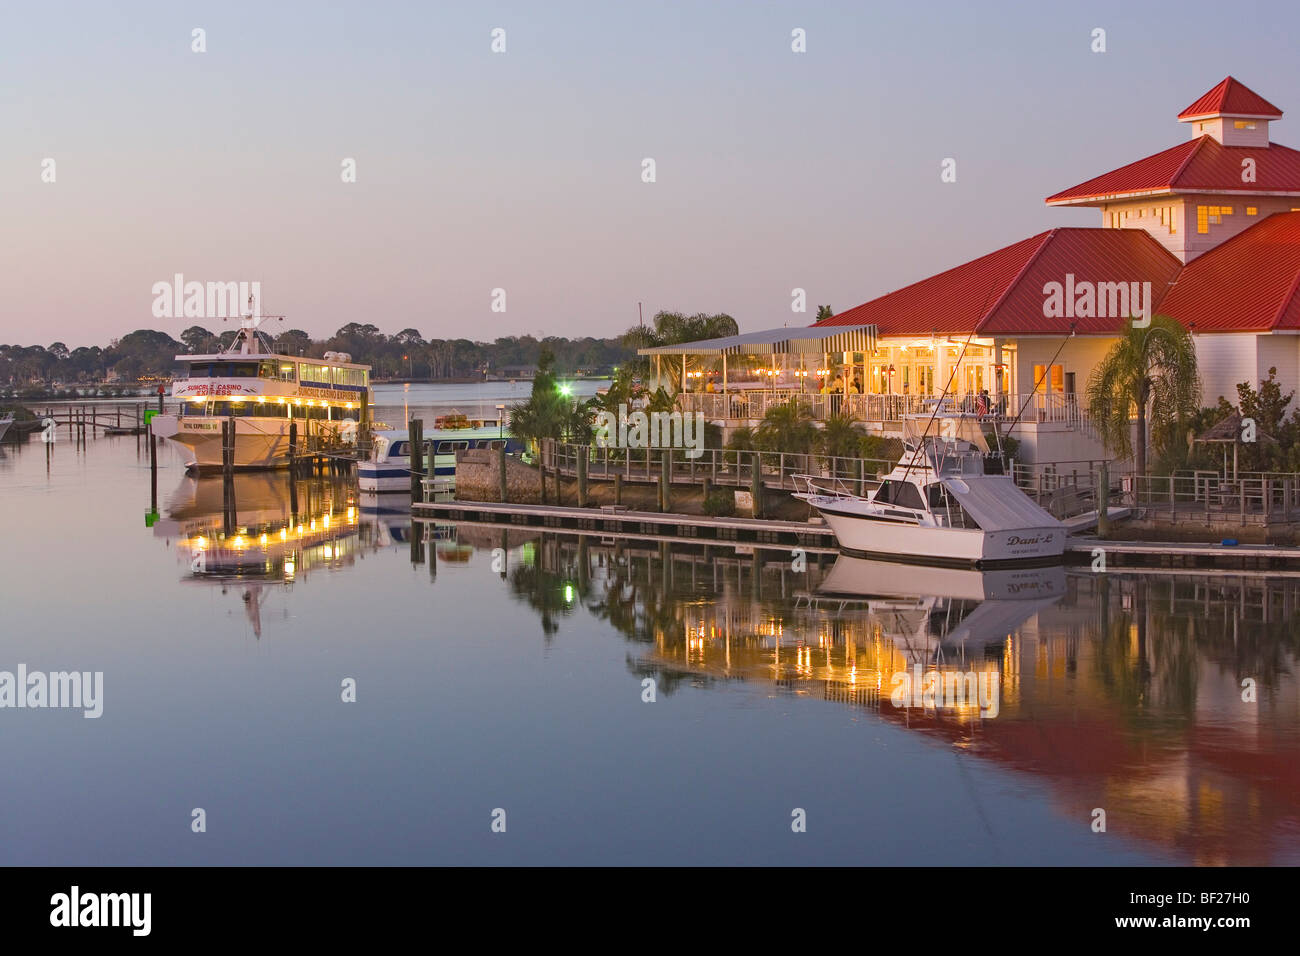 Las capturas Waterfront Grille Restaurant a orillas del mar, en la luz del sol vespertino, Tampa Bay, Port Ritchey, Florida, EE.UU. Foto de stock